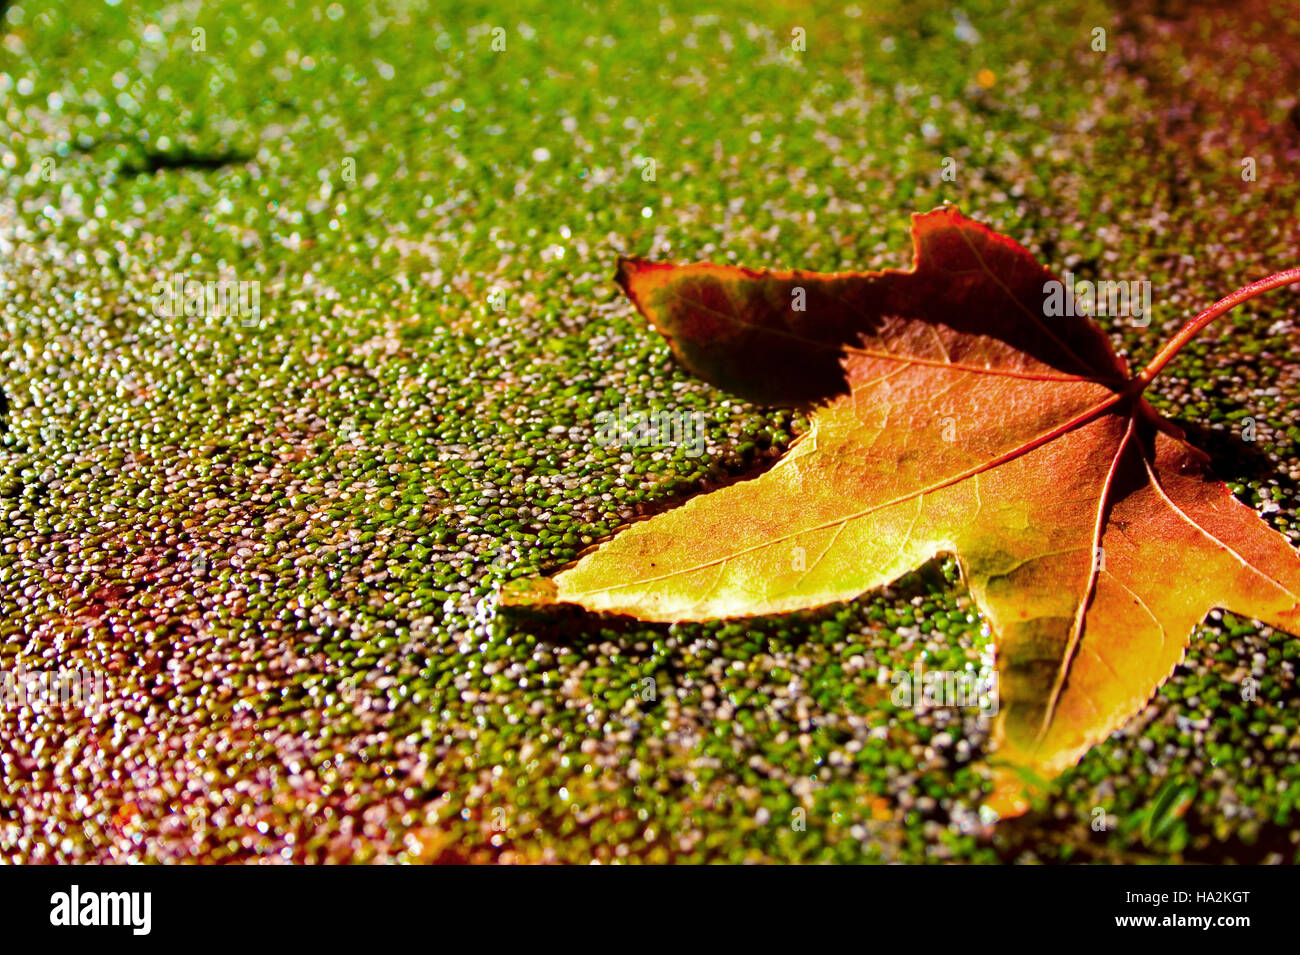 Autumn leaf floating on duckweed Stock Photo